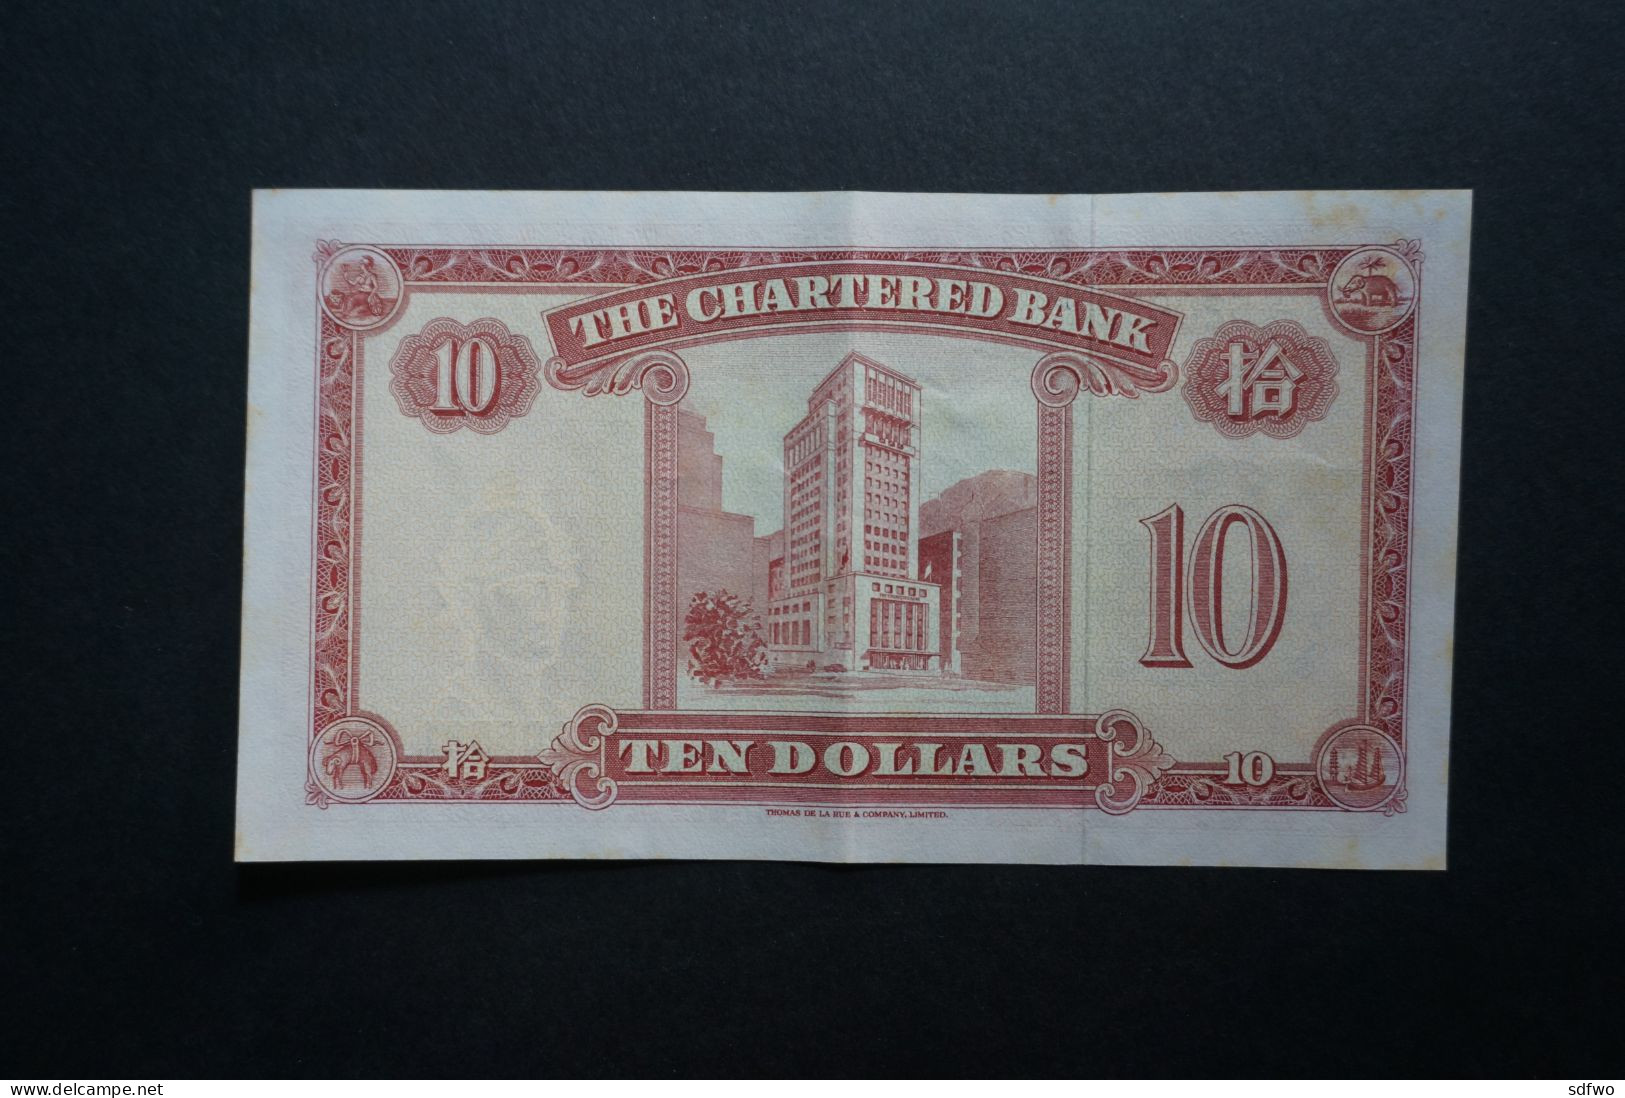 (M) 1962 HONG KONG OLD ISSUE - THE CHARTERED BANK 10 DOLLARS - #U/G 5206521 To 22 (2 Pcs) - Hongkong